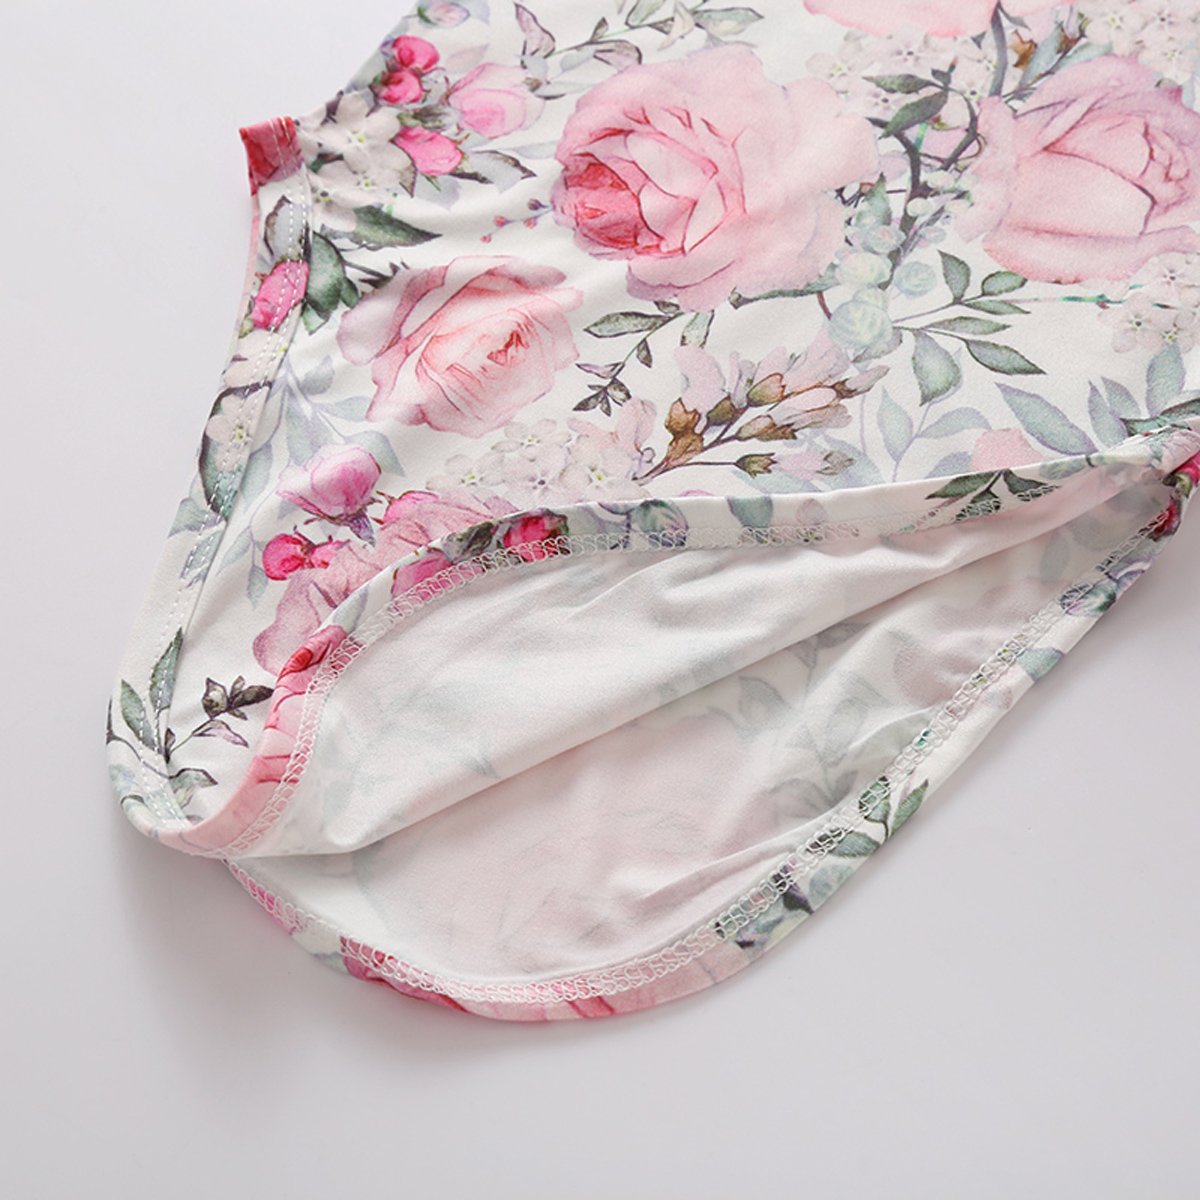 Saco de dormir para bebé recién nacido con estampado floral encantador de 2 piezas